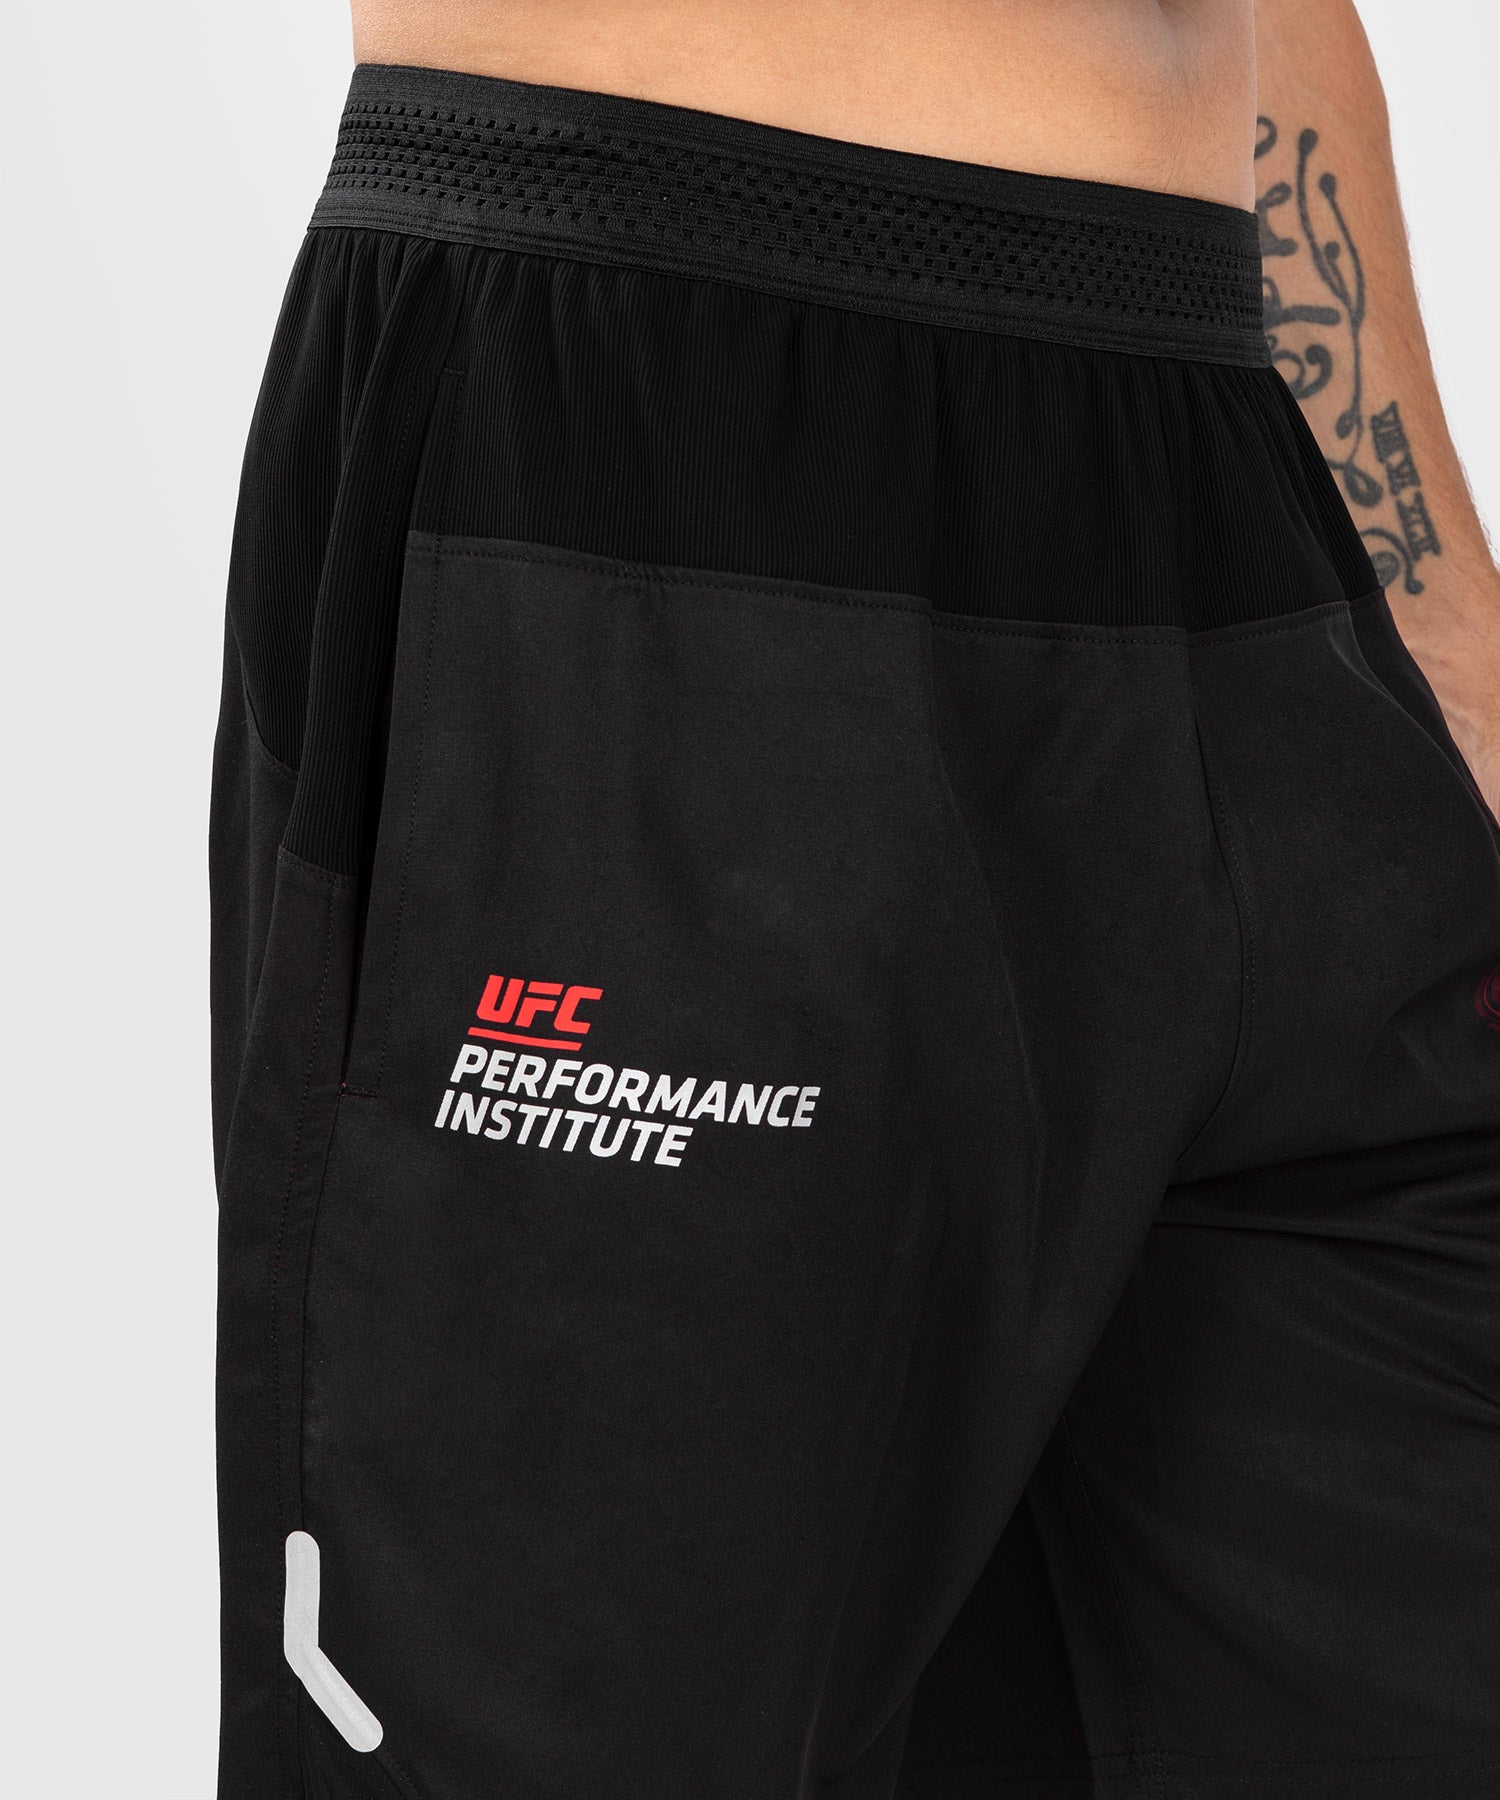 Short de performance pour hommes UFC Venum Performance Institute 2.0 - Noir/Rouge - Shorts de fitness